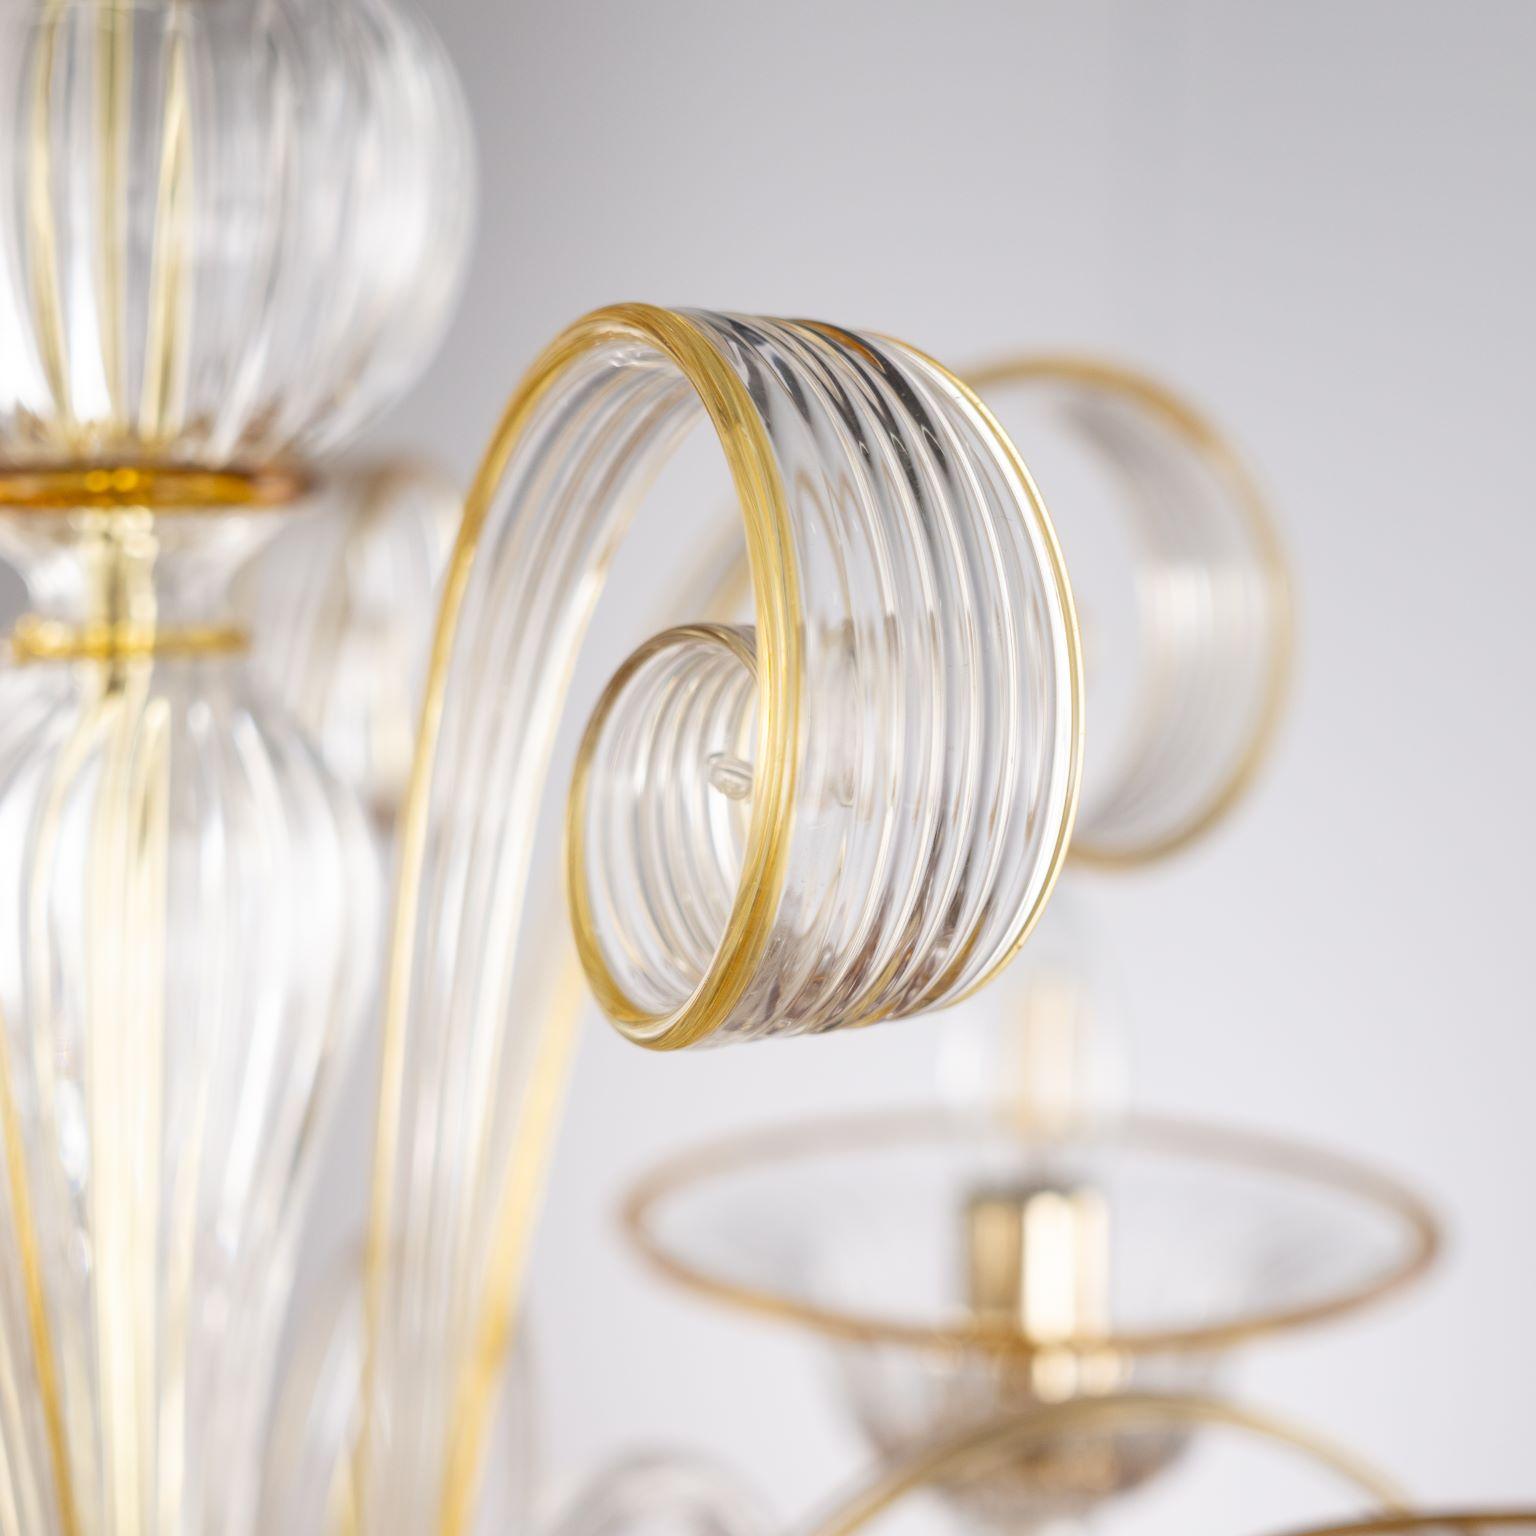 Capriccio Kronleuchter, 5 Lichter, aus klarem Kunstglas, mit geschwungenen Ornamenten und bernsteinfarbenen Details von Multiforme.
Es ist von der klassischen venezianischen Tradition inspiriert und zeichnet sich durch eine zentrale Säule aus, in